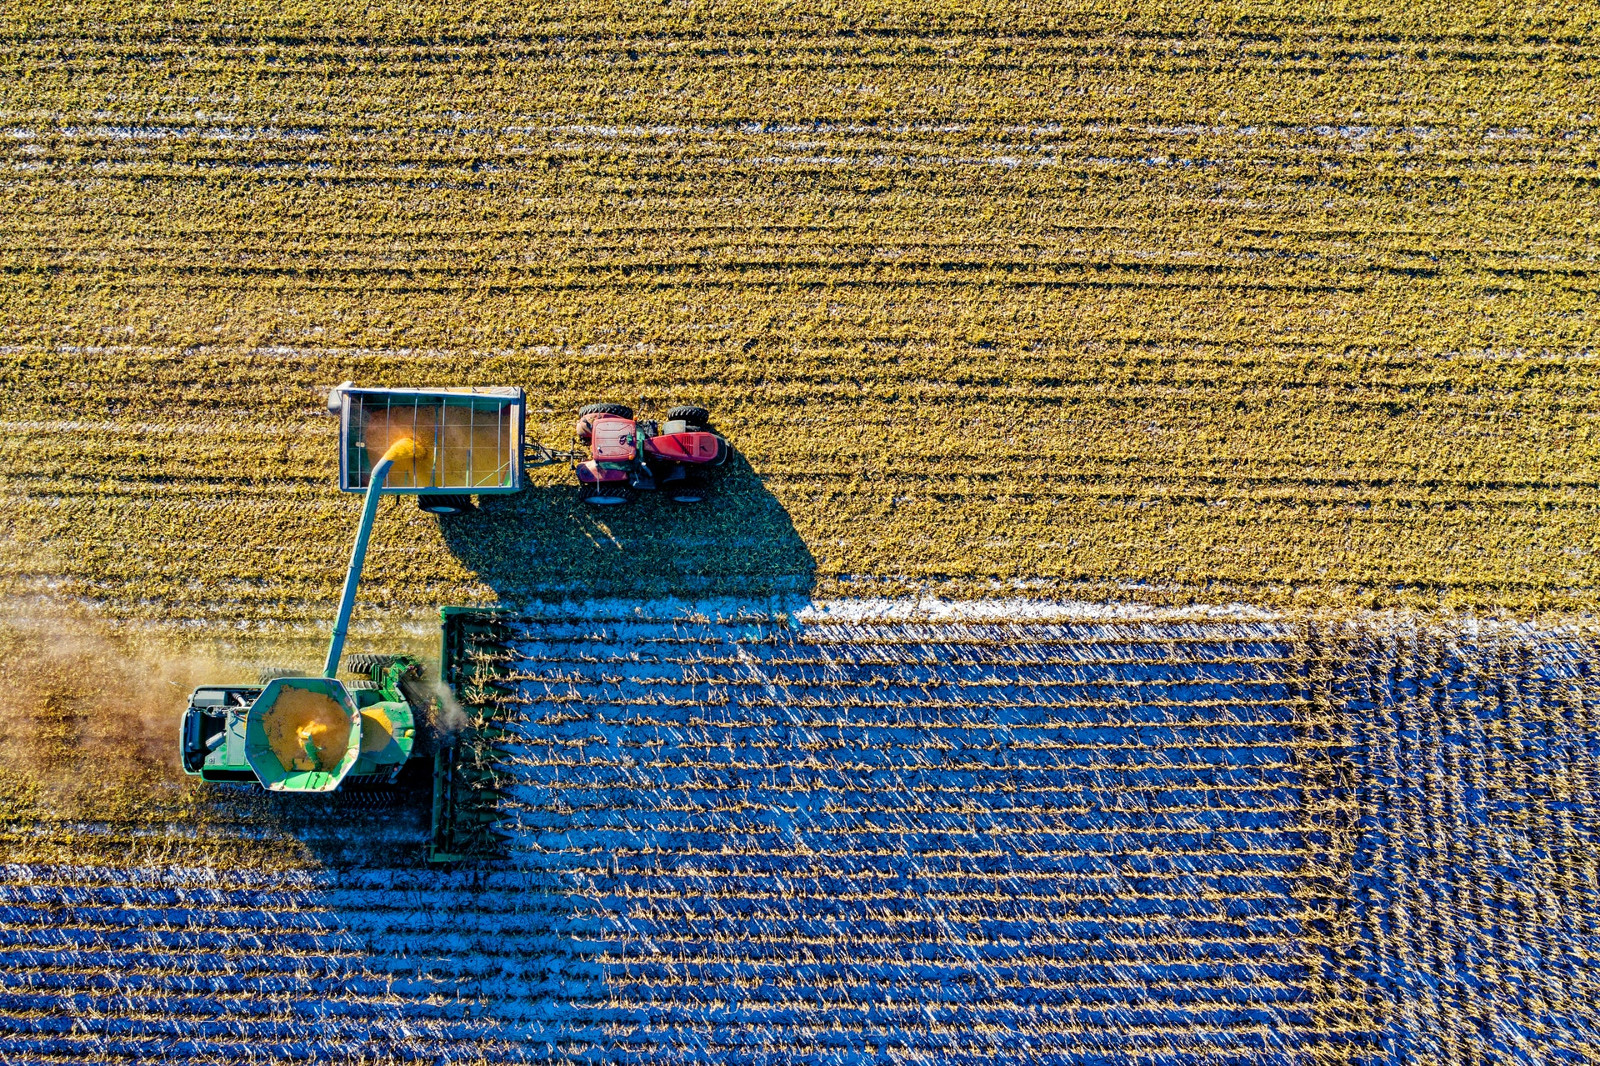 Máquinas agrícolas: alto investimento requer proteção